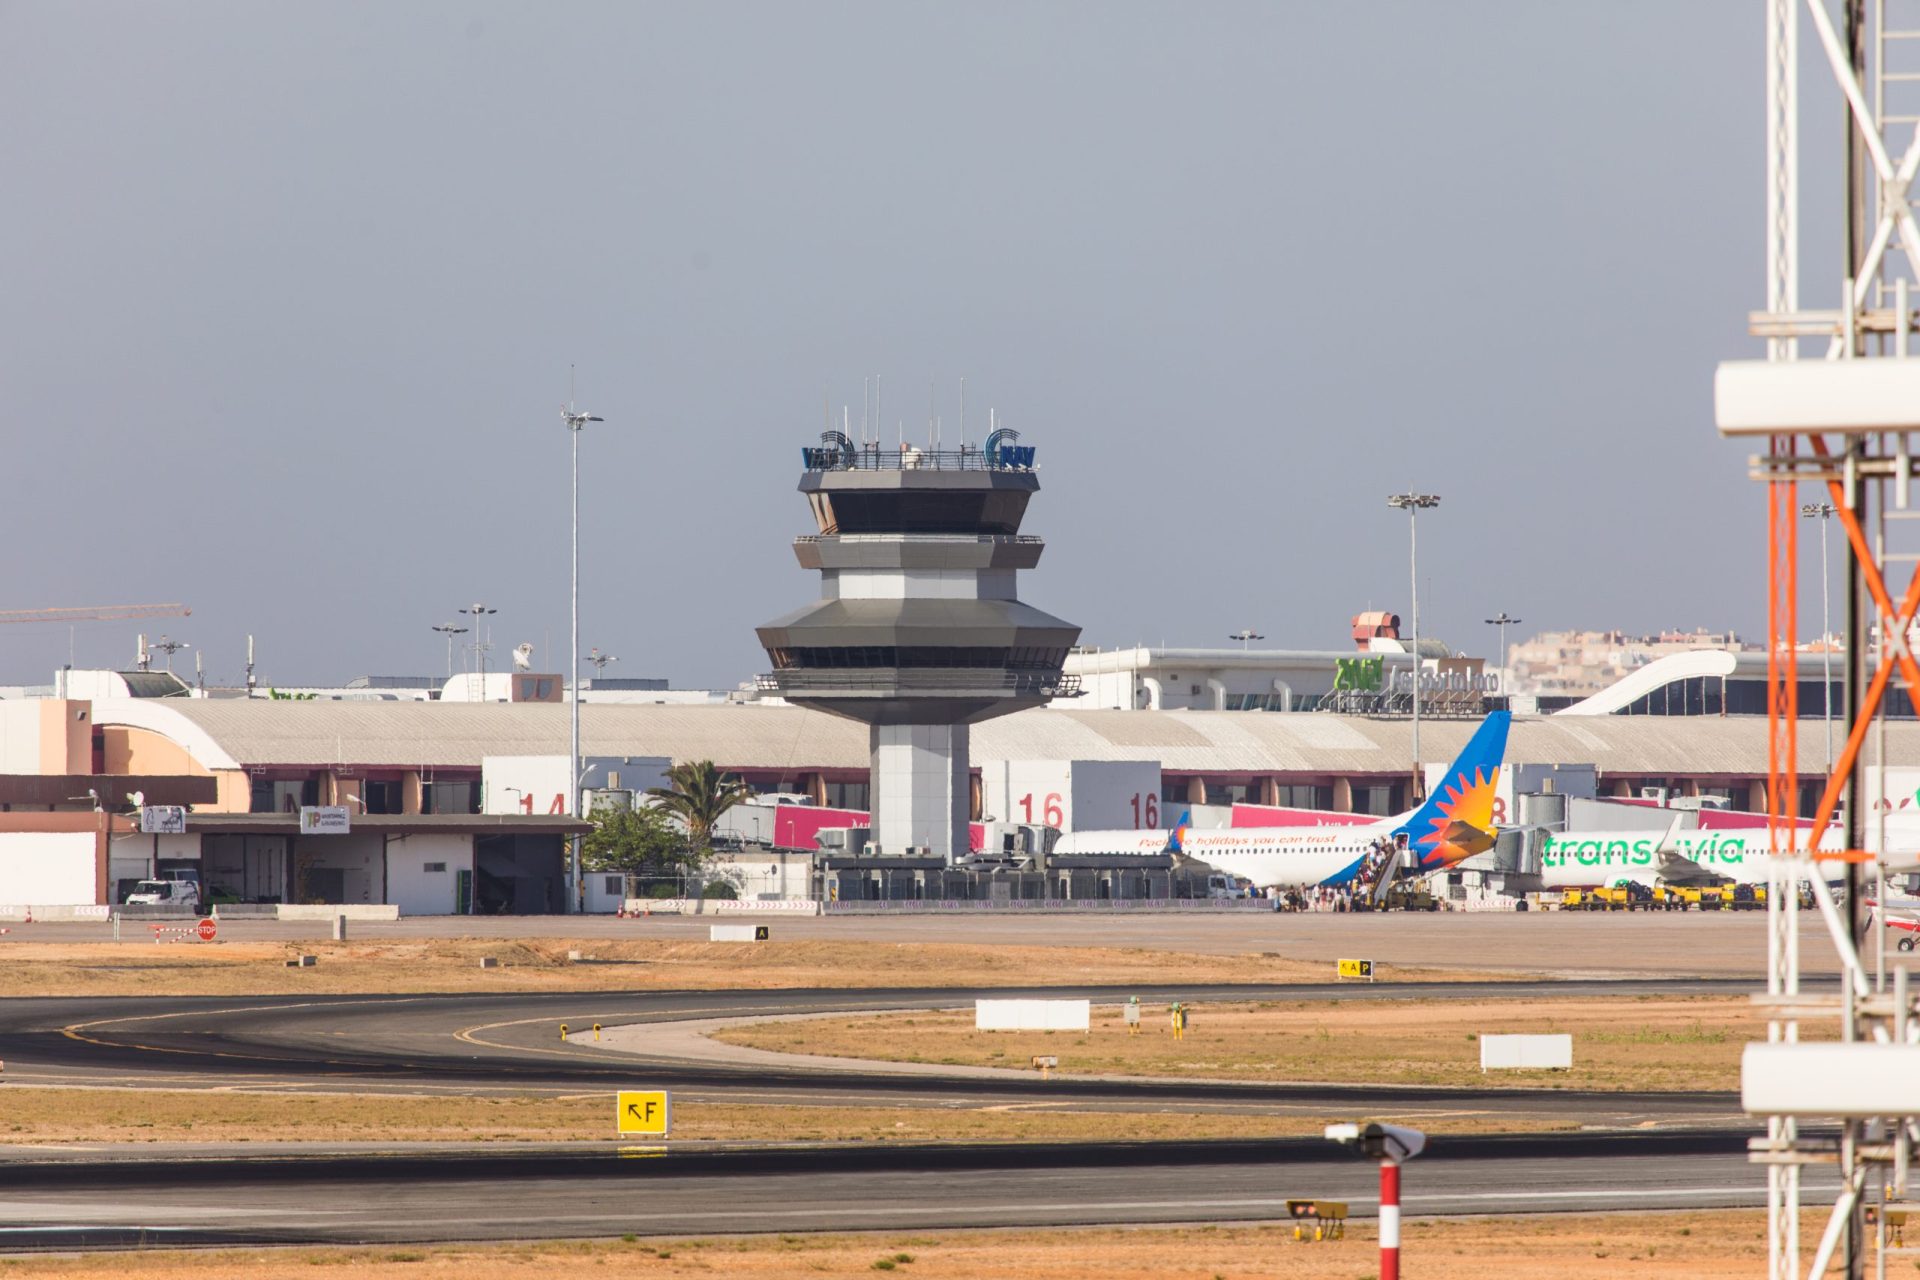 SEF detém cinco cidadãos estrangeiros no aeroporto de Faro por uso de documentos falsos